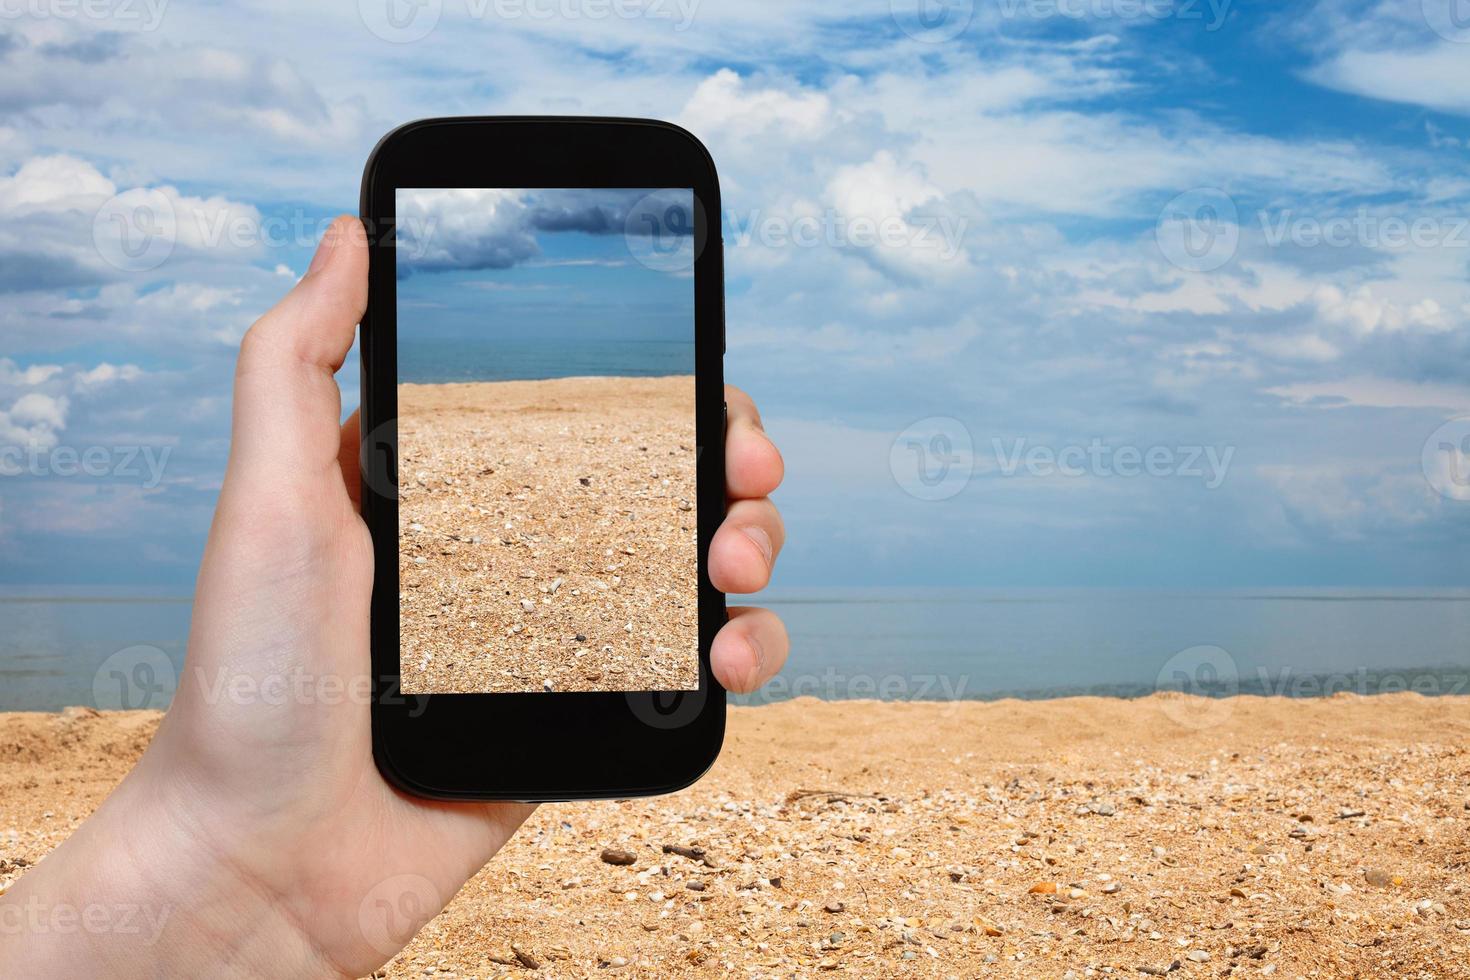 playa de conchas y arena del mar de azov en el teléfono inteligente foto